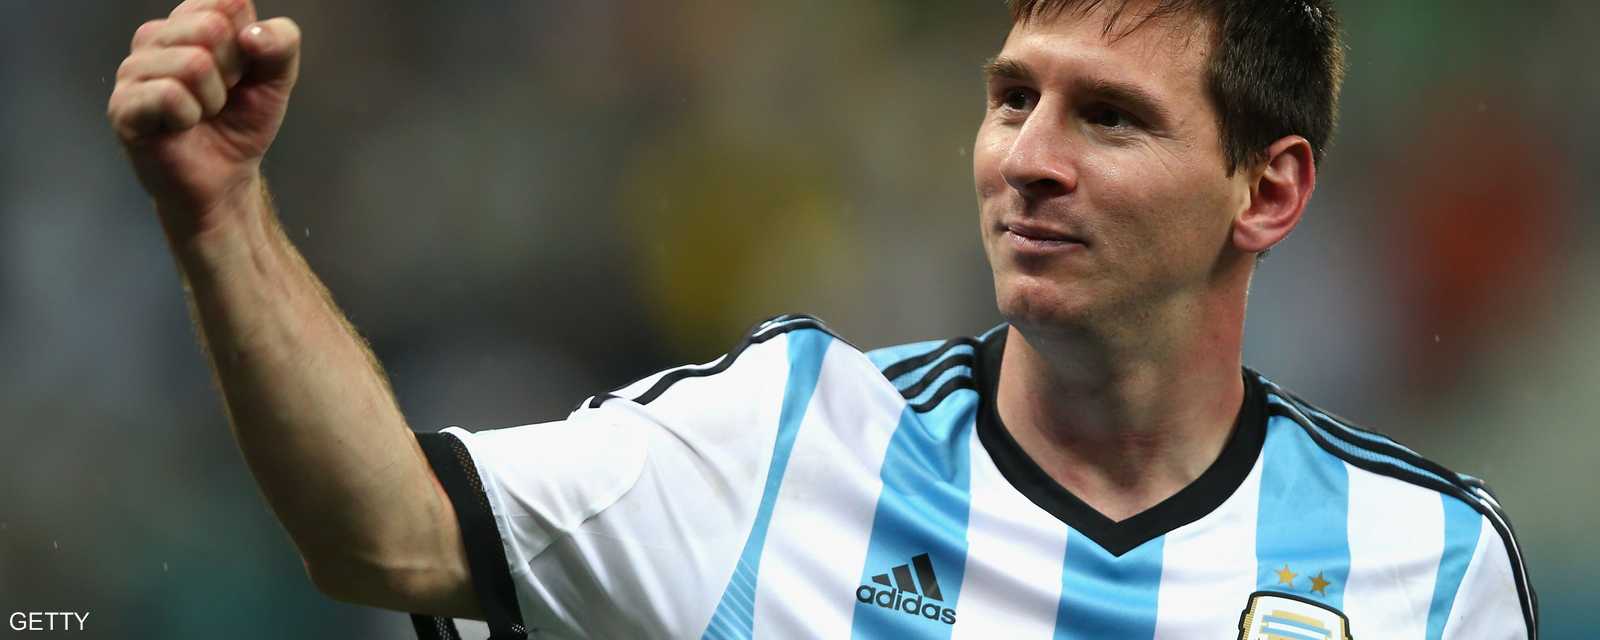 ليونيل ميسي قائد الأرجنتين سجل 4 أهداف وقدم مستوى متميزا خلال البطولة